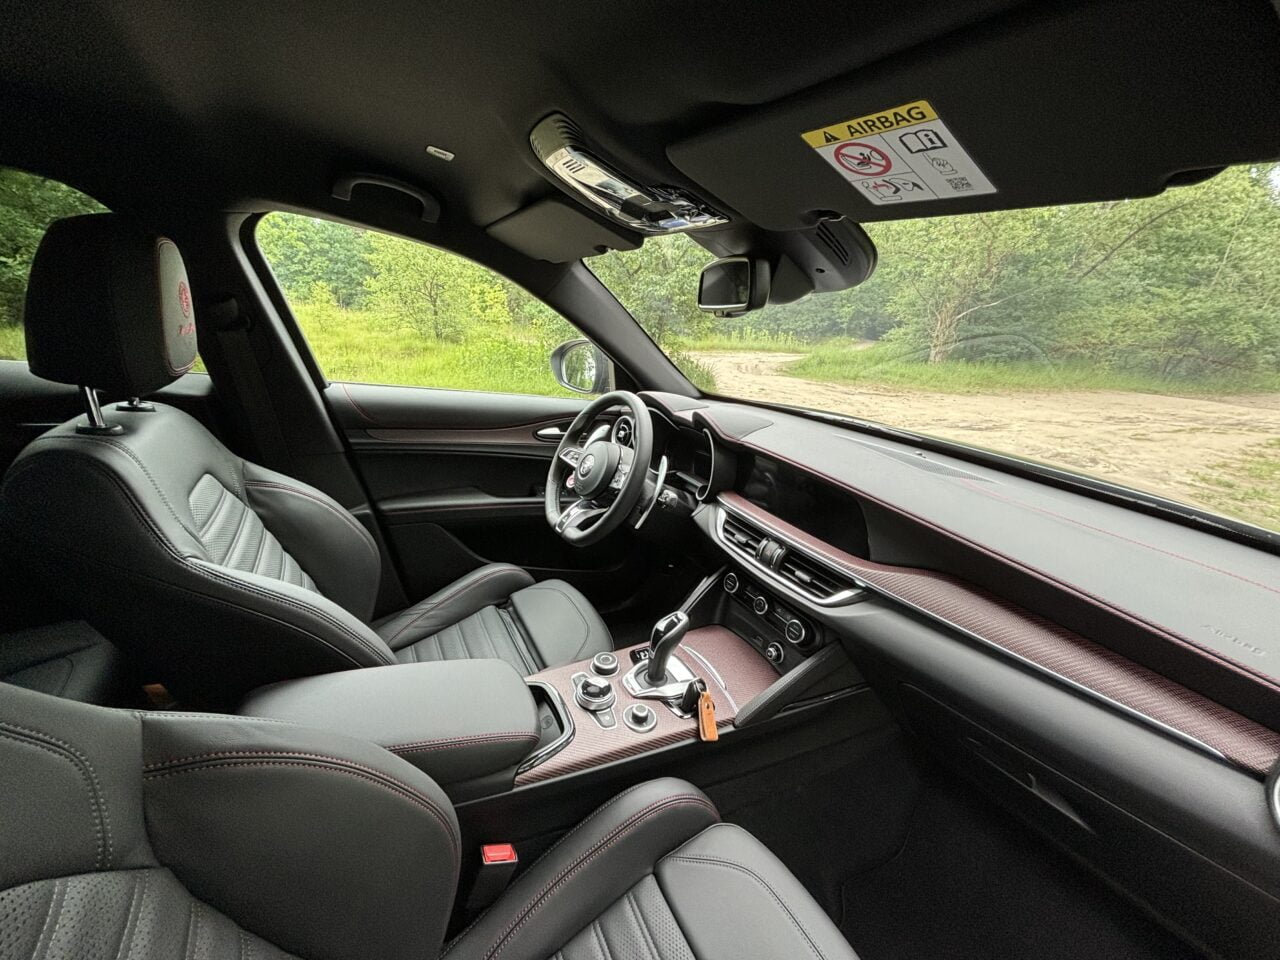 Wnętrze samochodu z czarnymi skórzanymi fotelami i wykończeniami, widok na kierownicę, konsolę i deskę rozdzielczą. Za oknem widoczny zielony krajobraz.